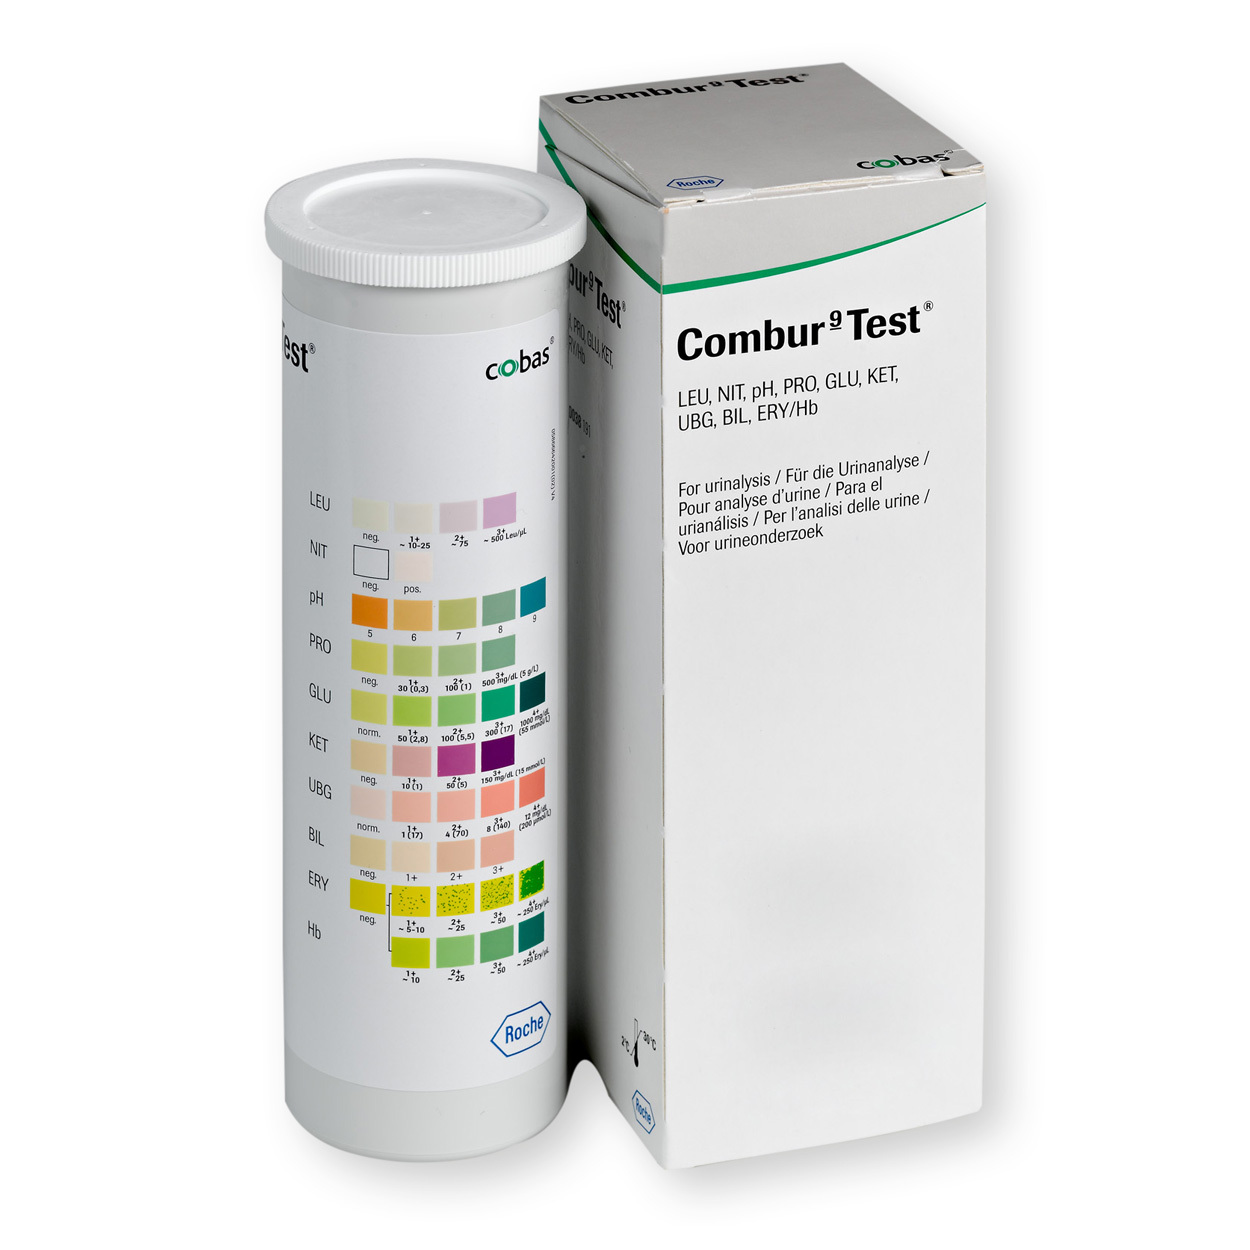 Roche Combur 9 Test Urinteststreifen - Packung à 50 Stück